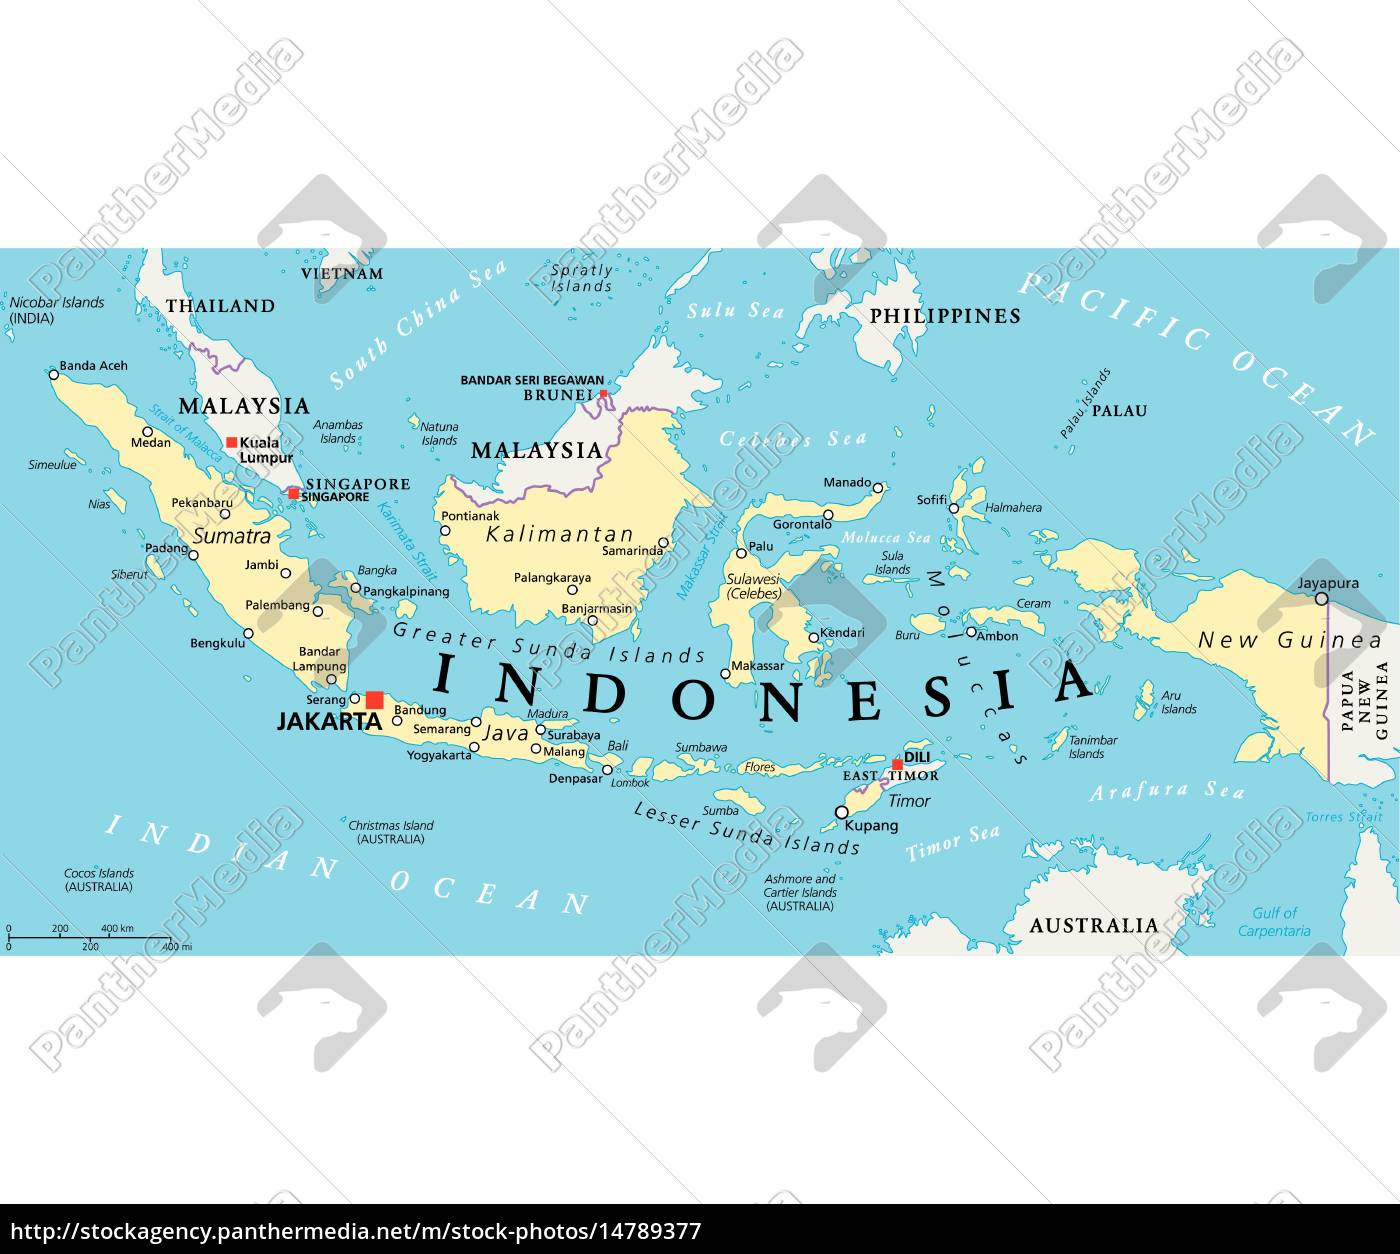 Kort Indonesien indonesien politisk kort   Royalty Free Image   #14789377  Kort Indonesien